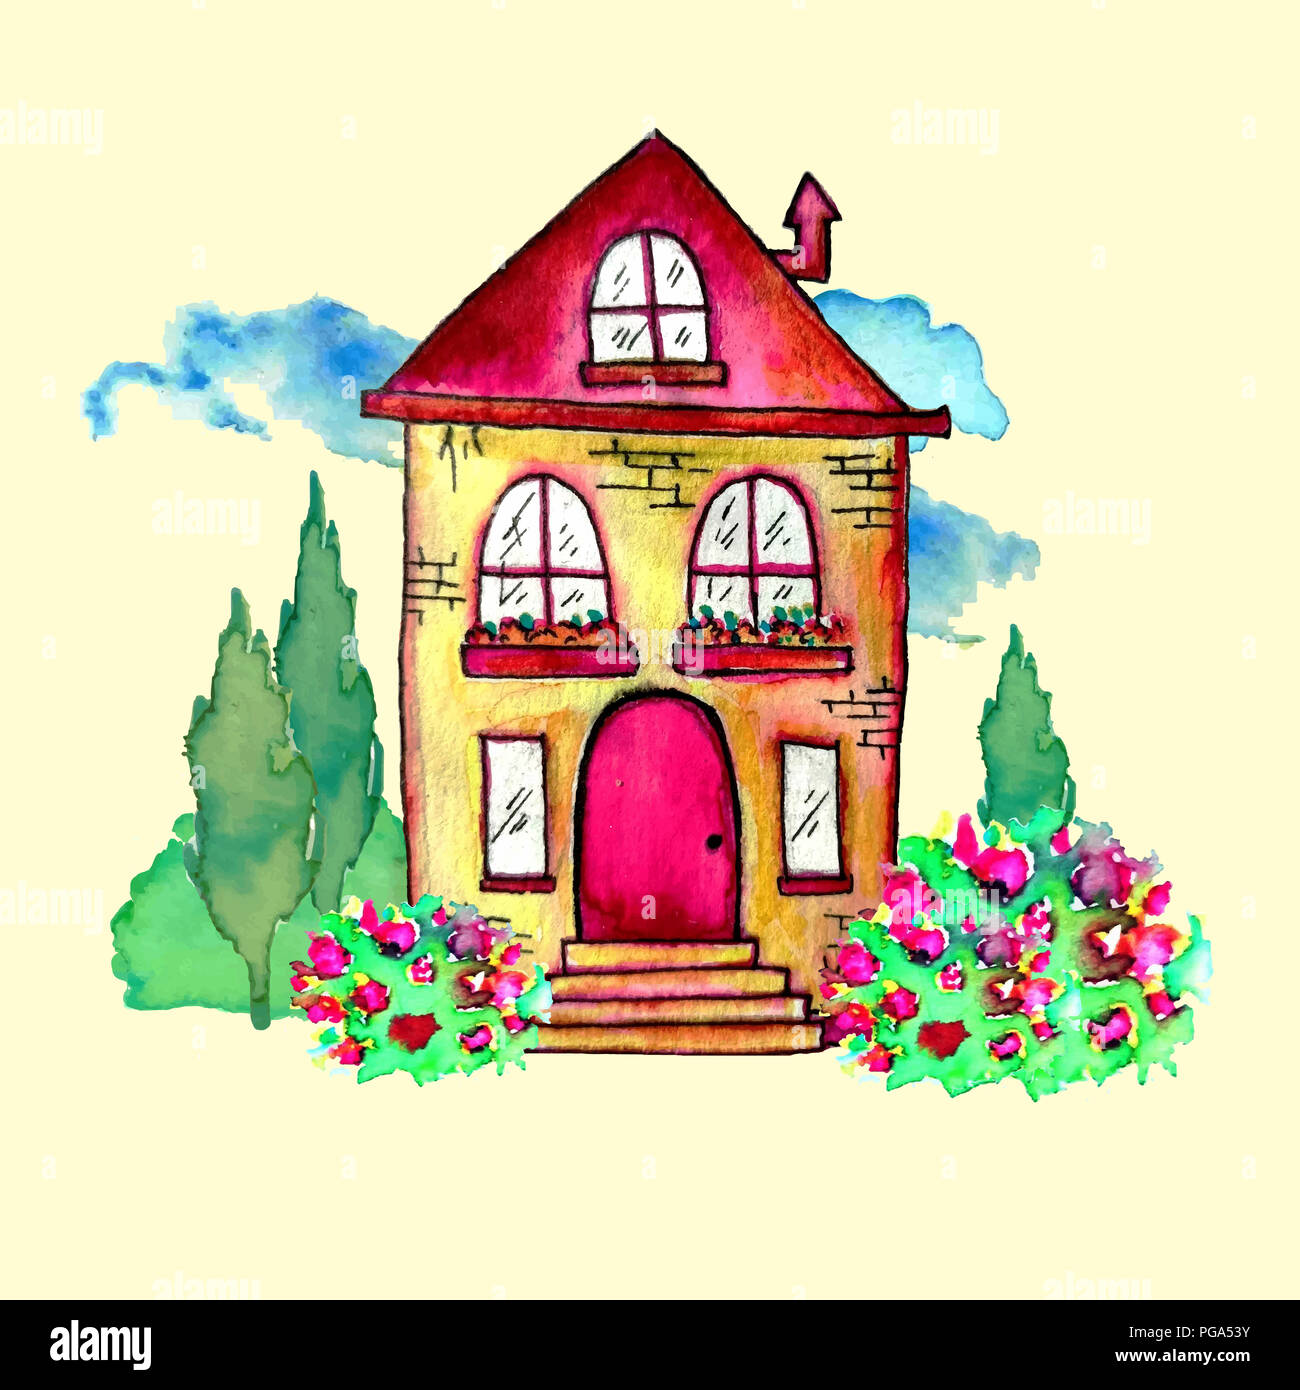 Carino acquerello paesaggio con la casa e il giardino. Sweet home concept. Dipinto a mano carta con happy house, blue clouds, cespugli e fiori. Immagine raster Foto Stock